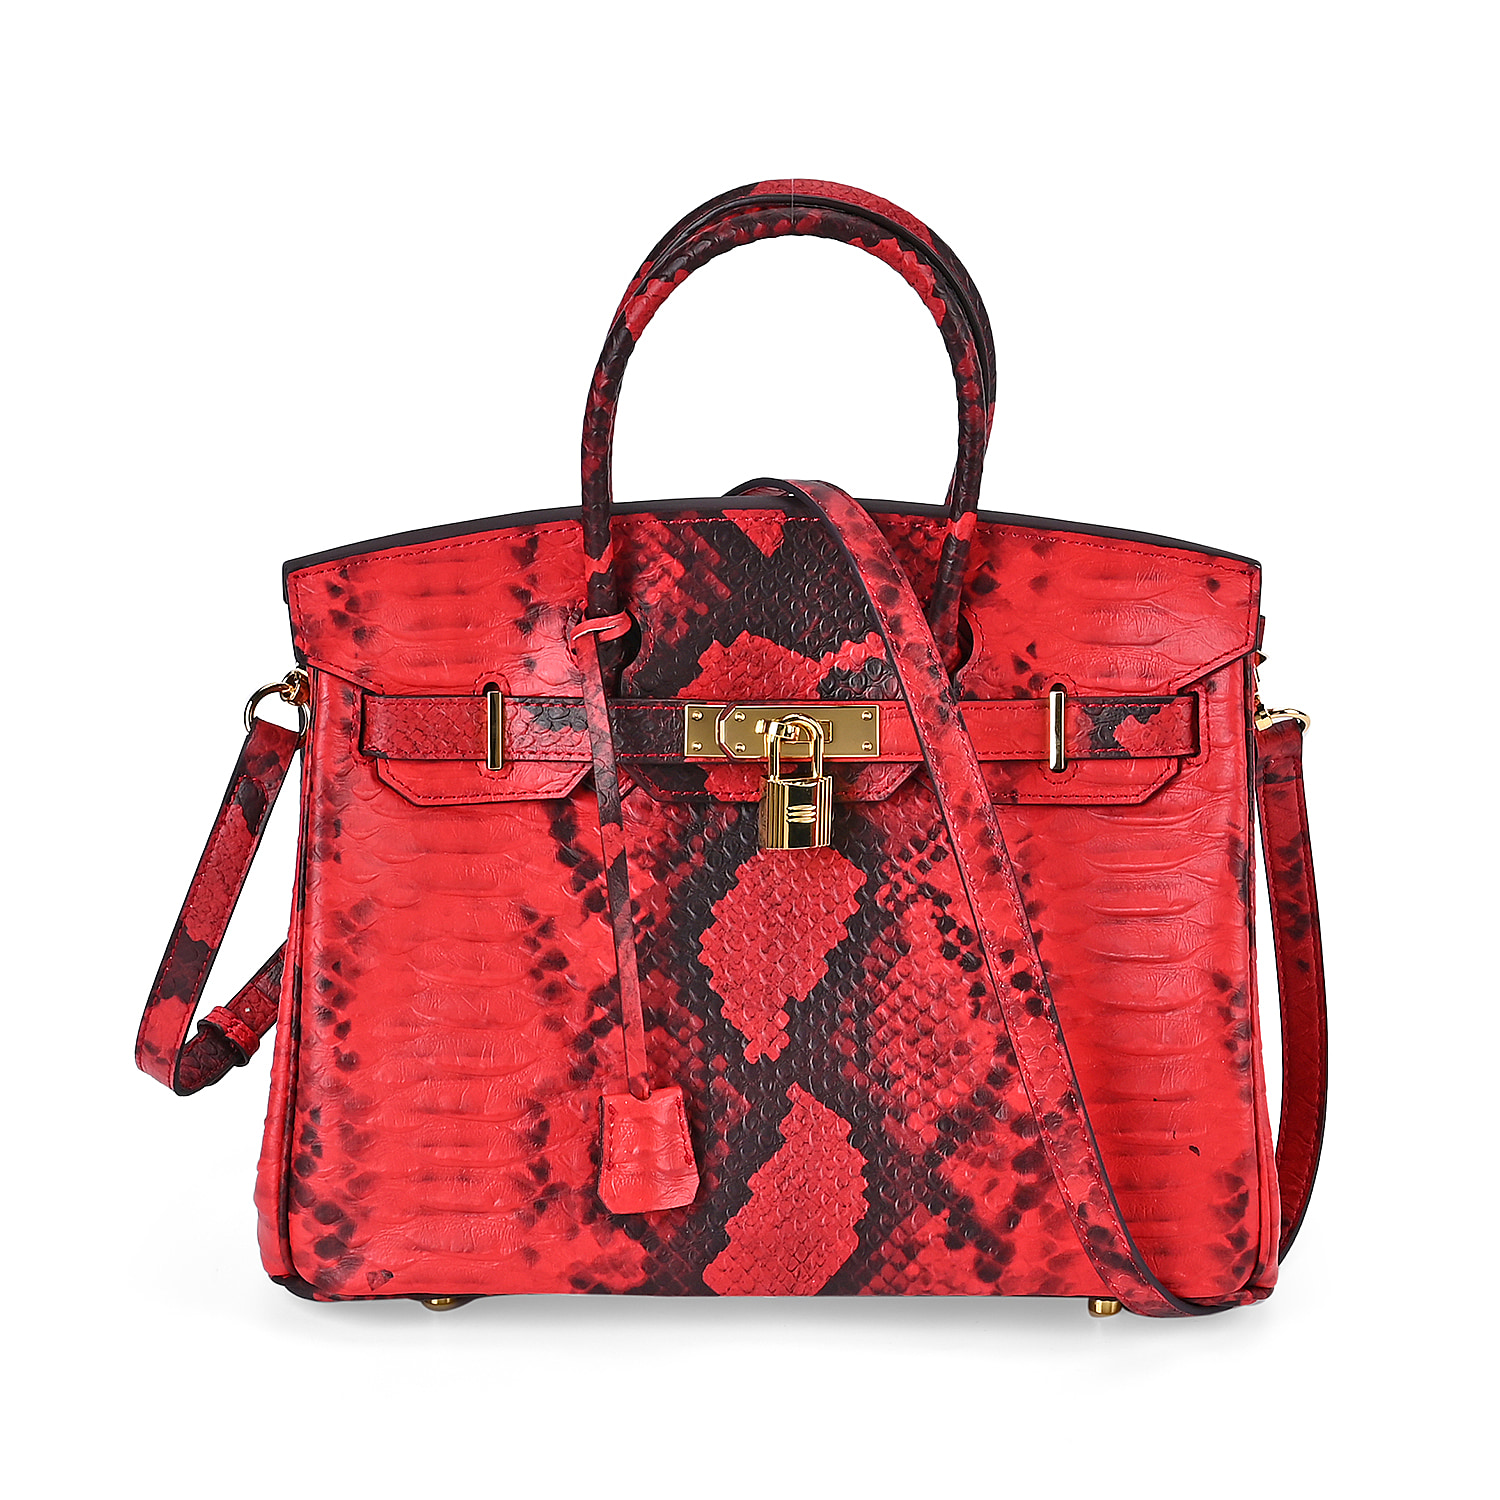 Leather Snakeskin Crossbody Bag - Red